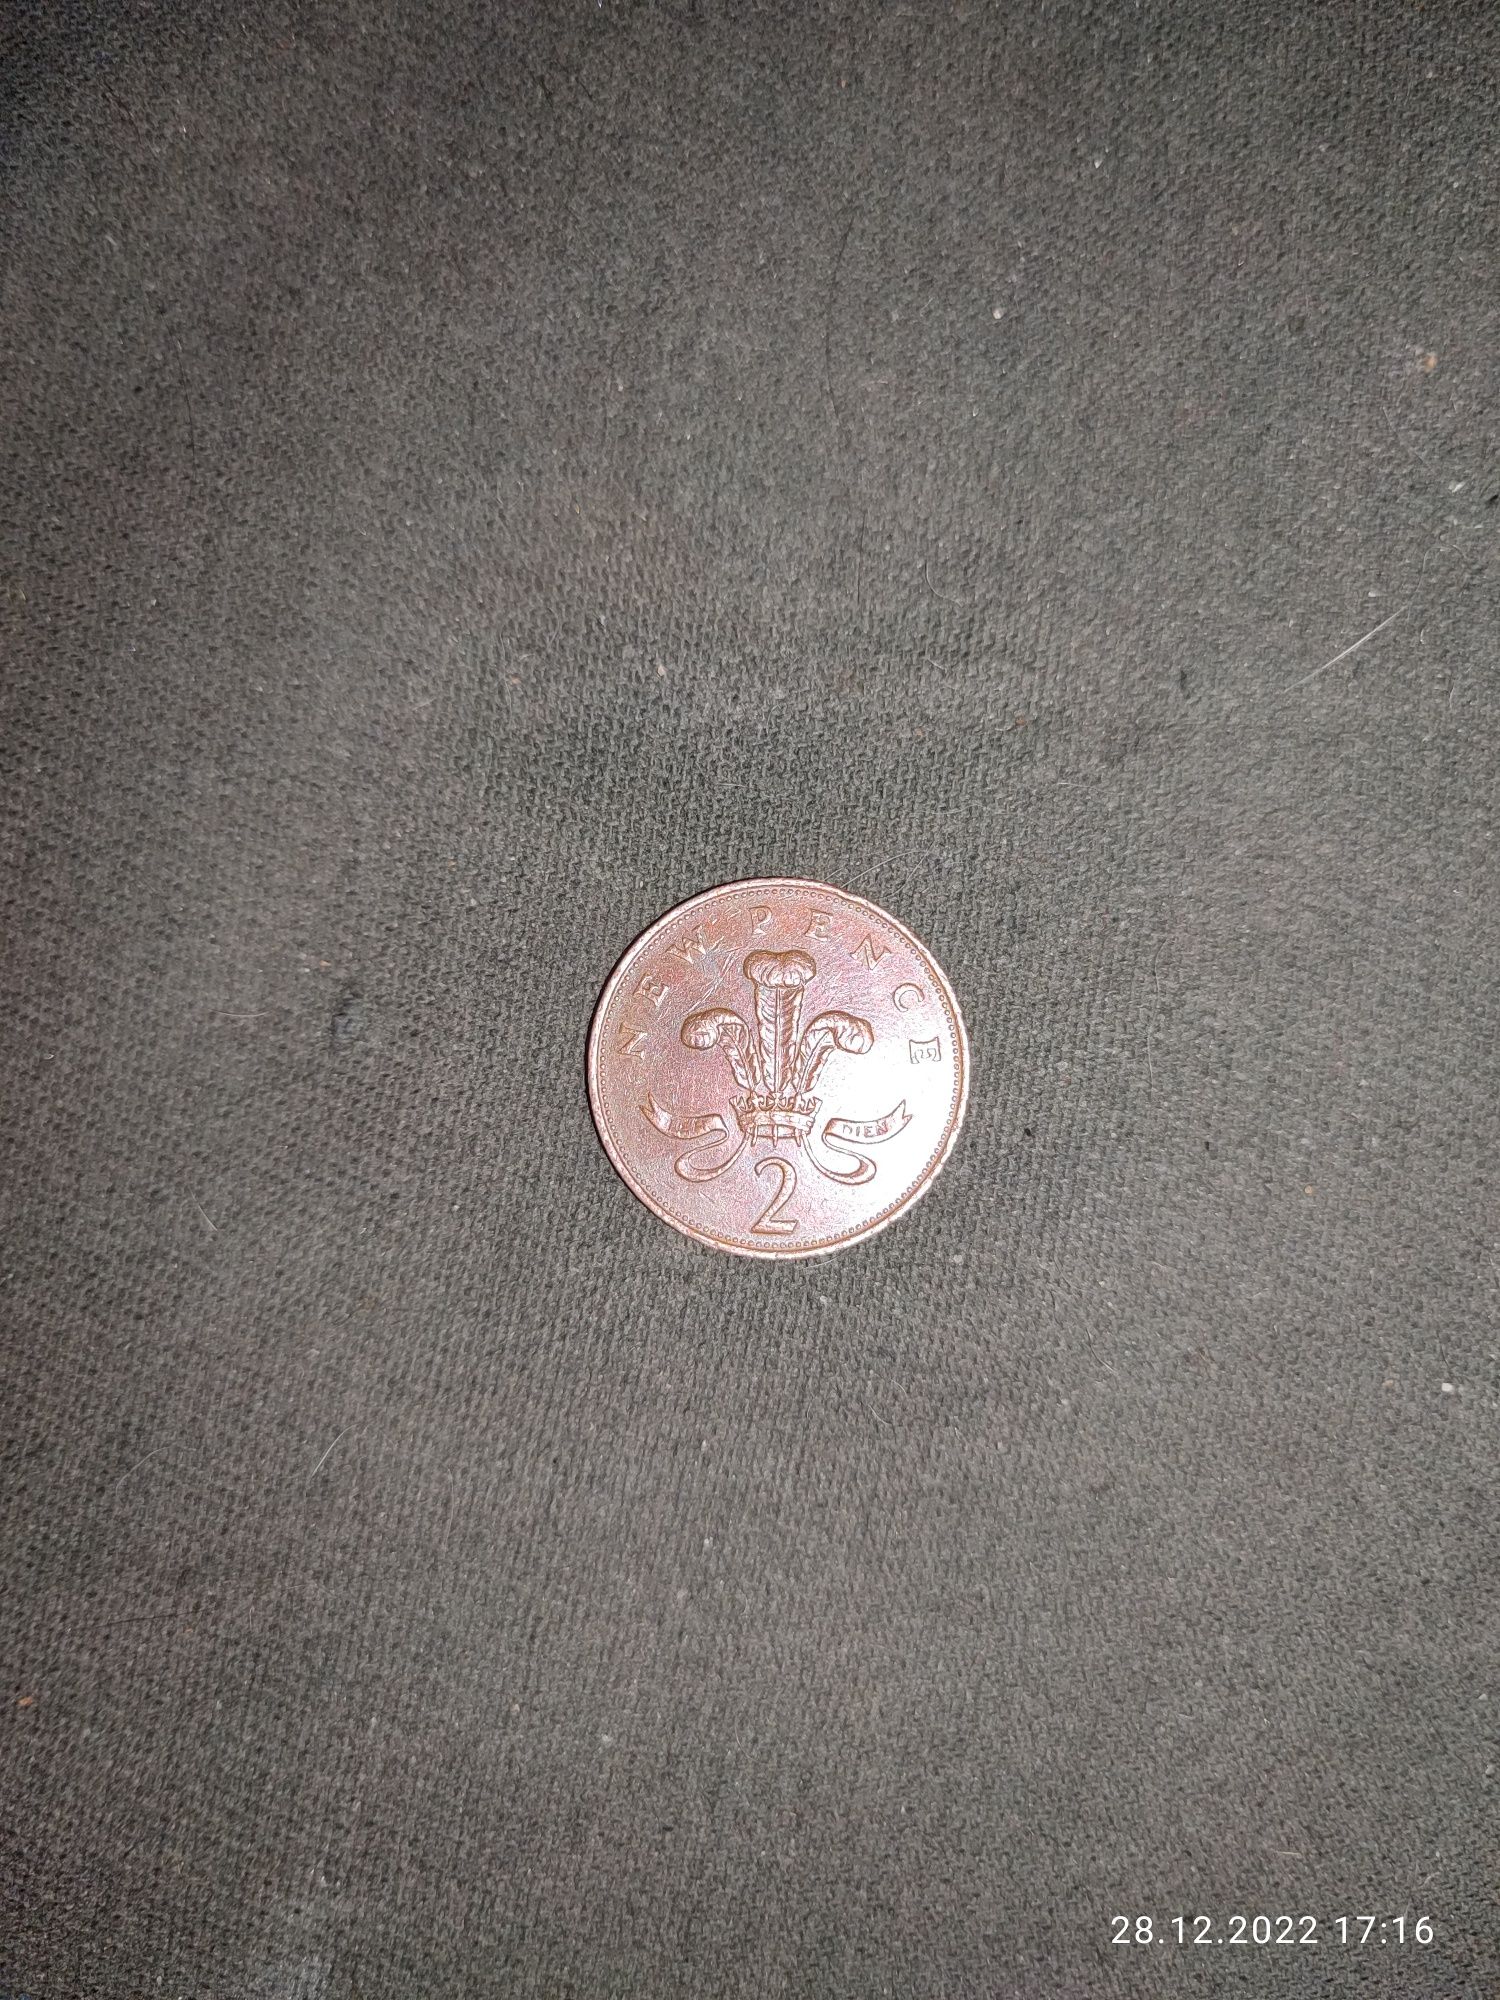 Монета Елизавета 2(Англия) 1971 год.